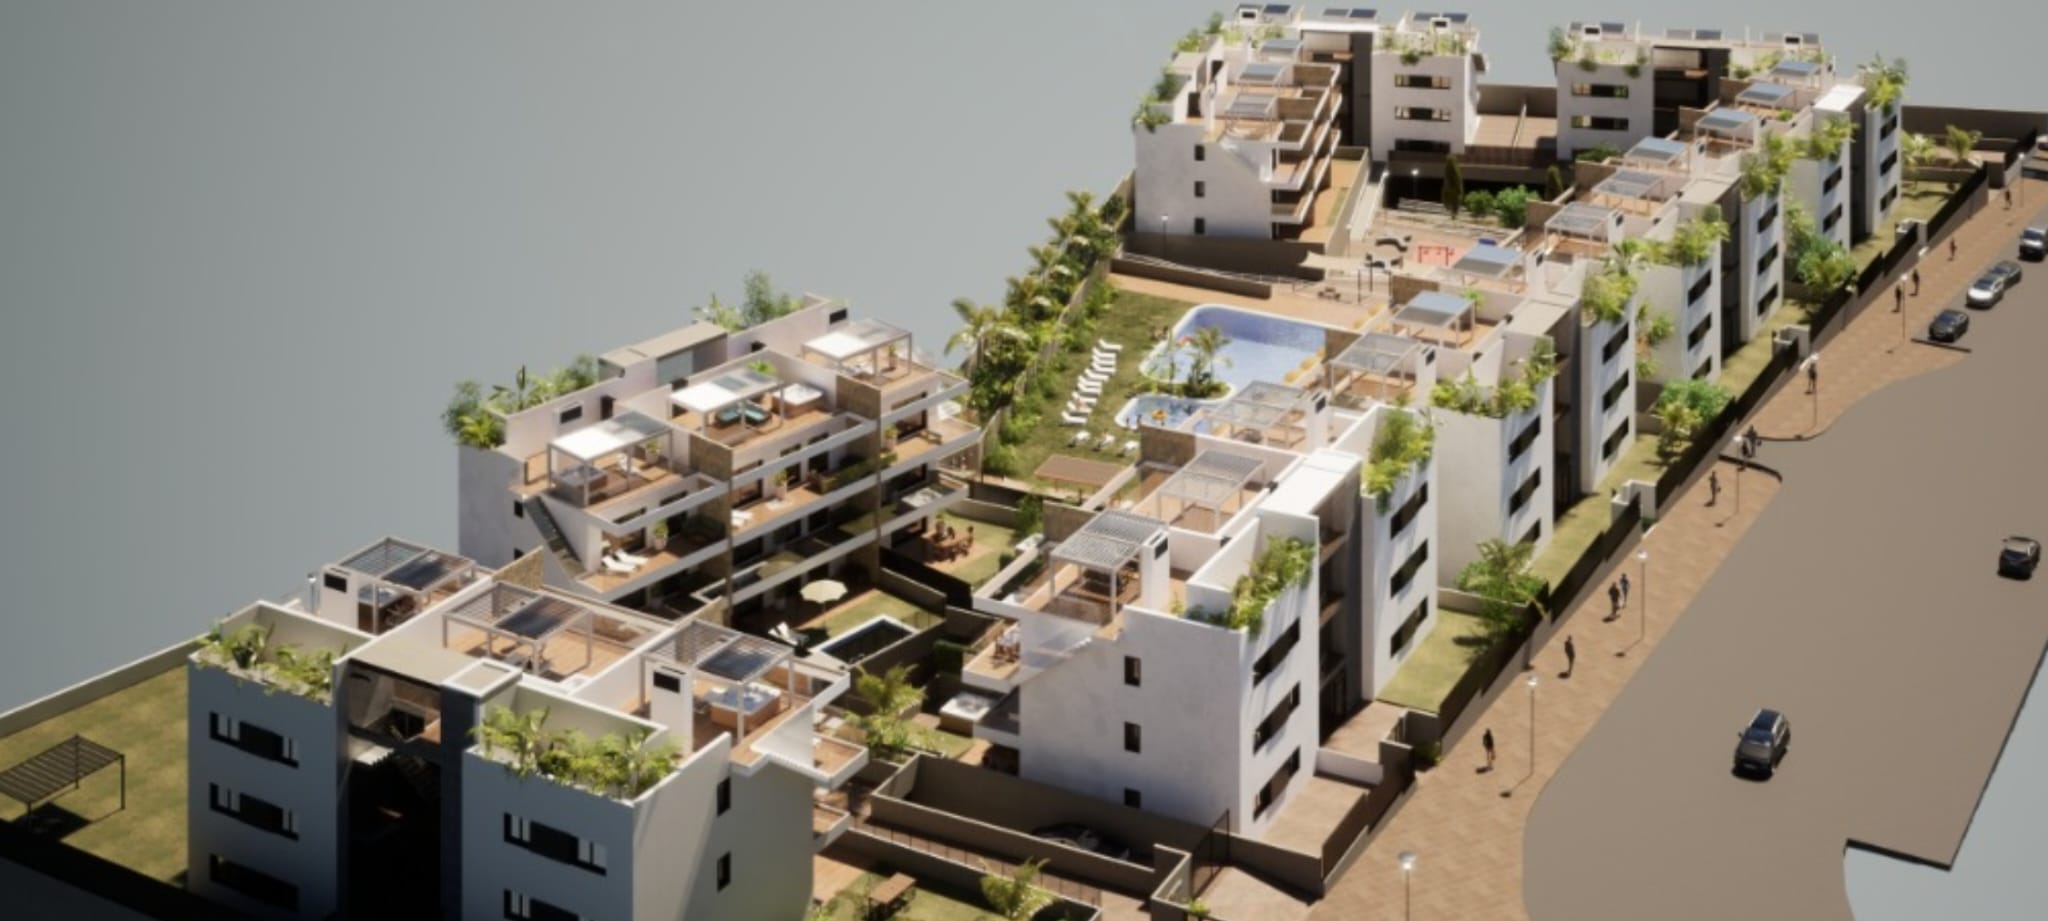 Finestrat: Luxuriöse Apartments mit einem phänomenalen Blick über die Skyline von Benidorm